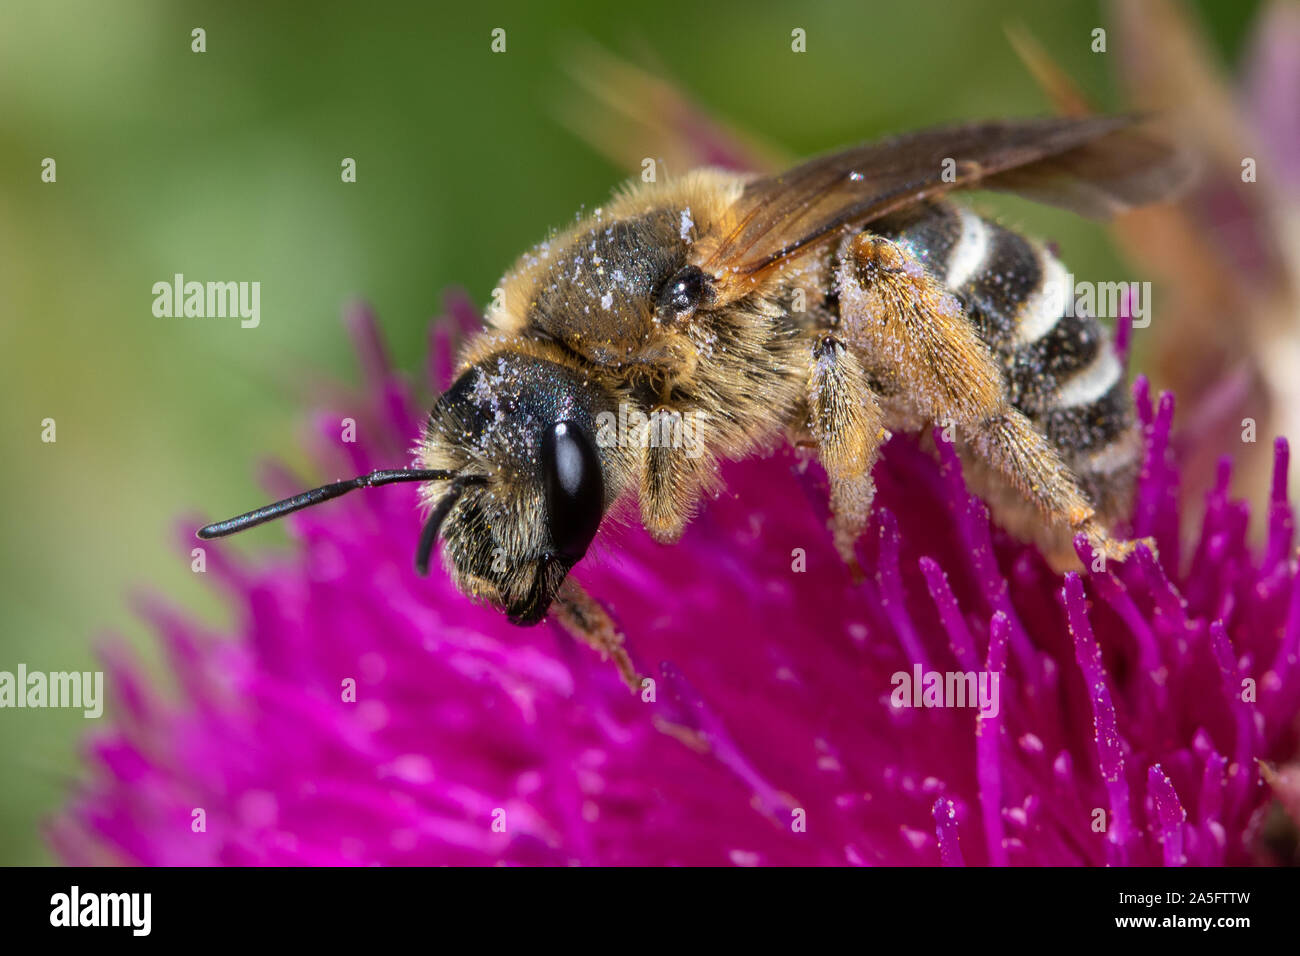 abeja solitaria sp. sobre una flor de cardo Foto de stock